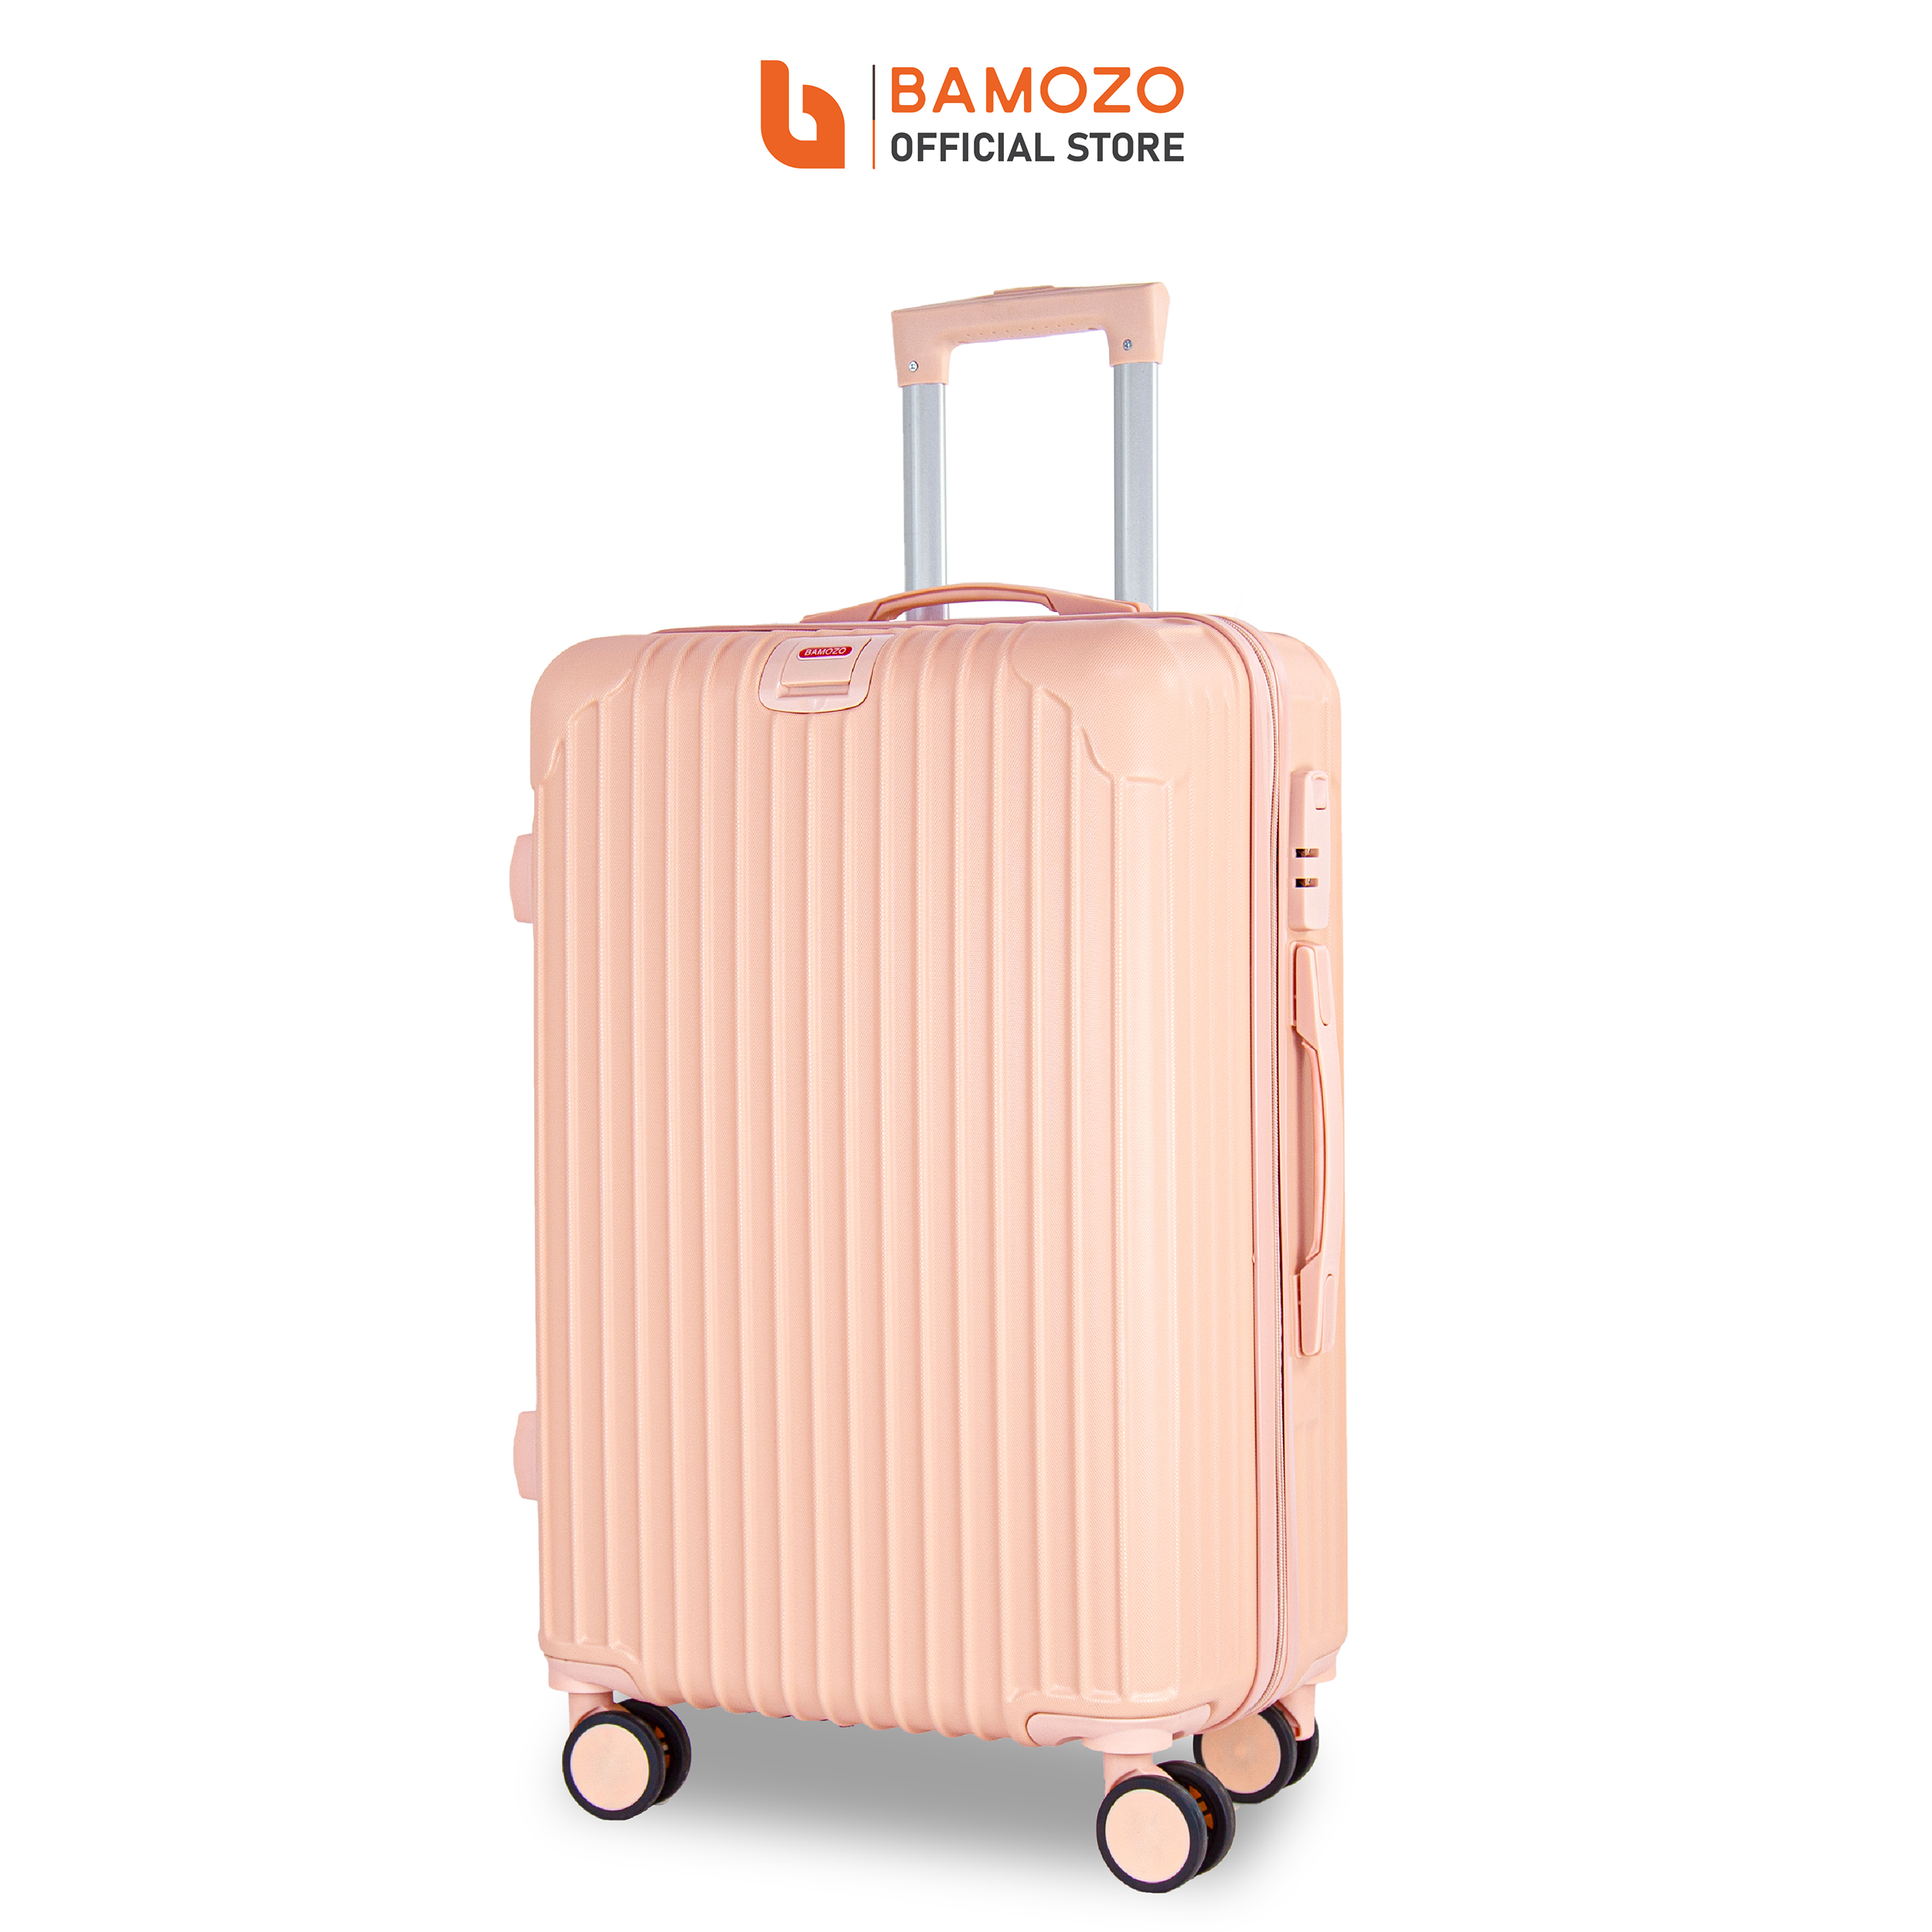 Vali du lịch BAMOZO 8801 MÀU HỒNG NHẠT size 20/24, vali kéo nhựa được bảo hành 5 năm